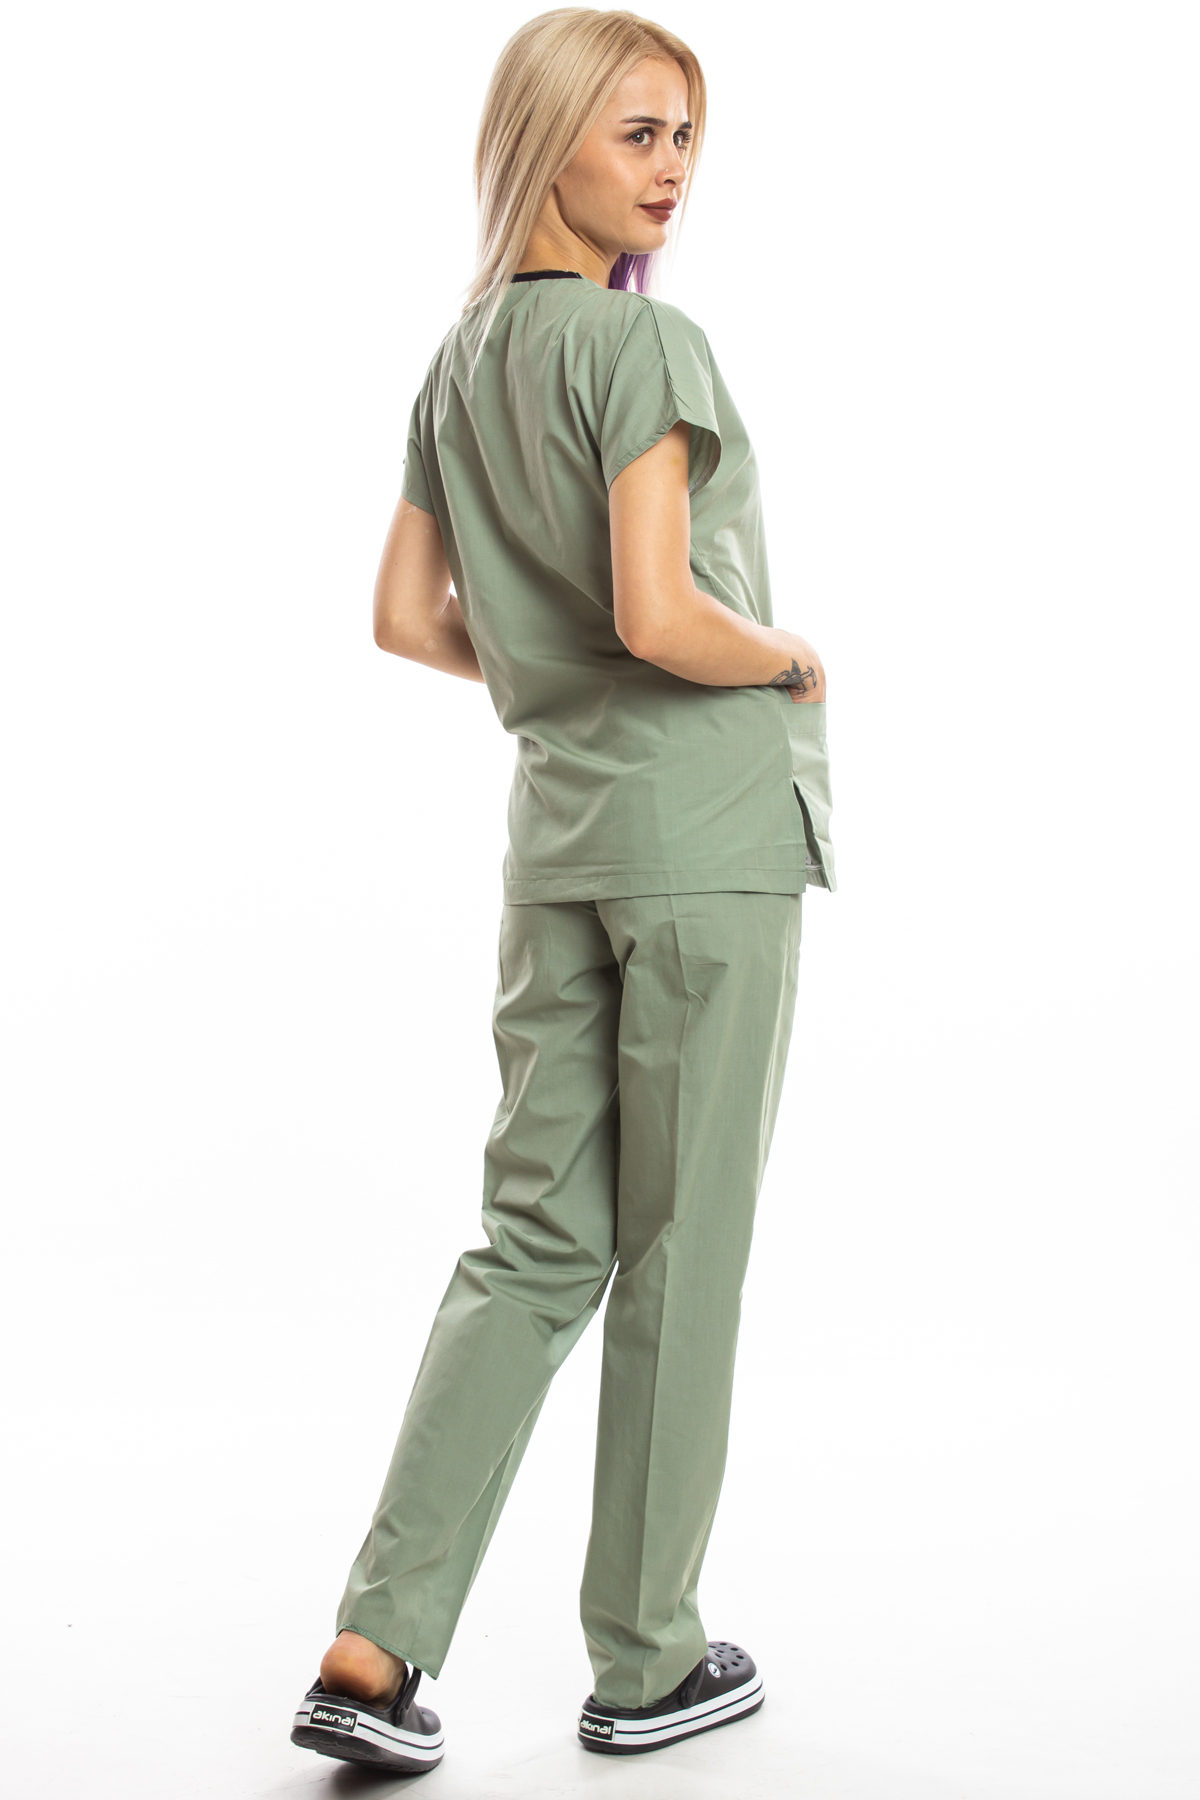 Küf Yeşili Cerrahi Doktor Hemşire Scrubs Forma Takım